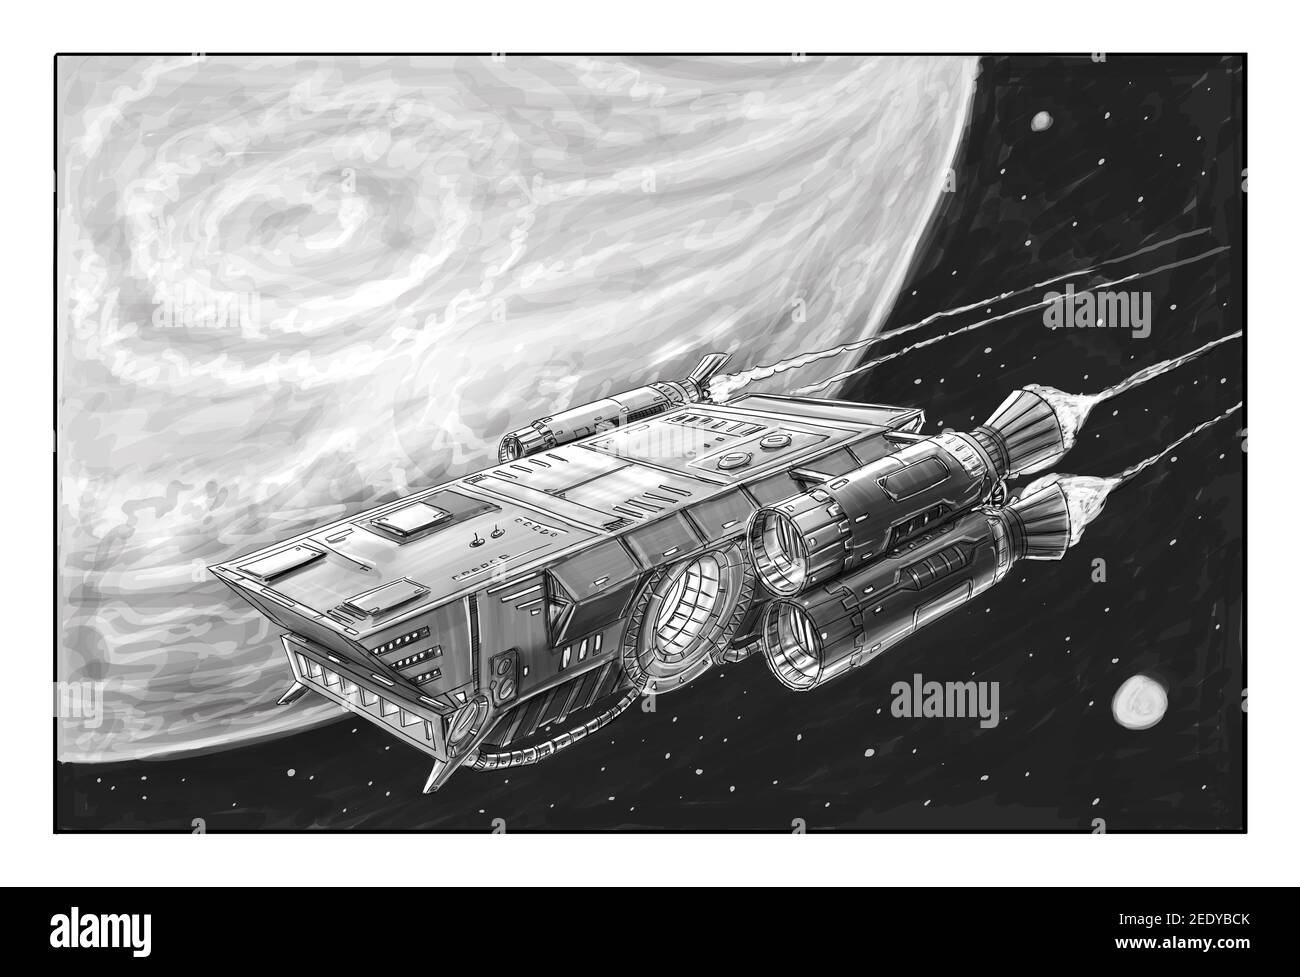 Sci-Fi Raumschiff oder Raumschiff-Design, Concept Art Illustration. Raumschiff oder Raumschiff fliegen in der Nähe des Planeten. Schwarz-Weiß-Zeichnung. Stockfoto